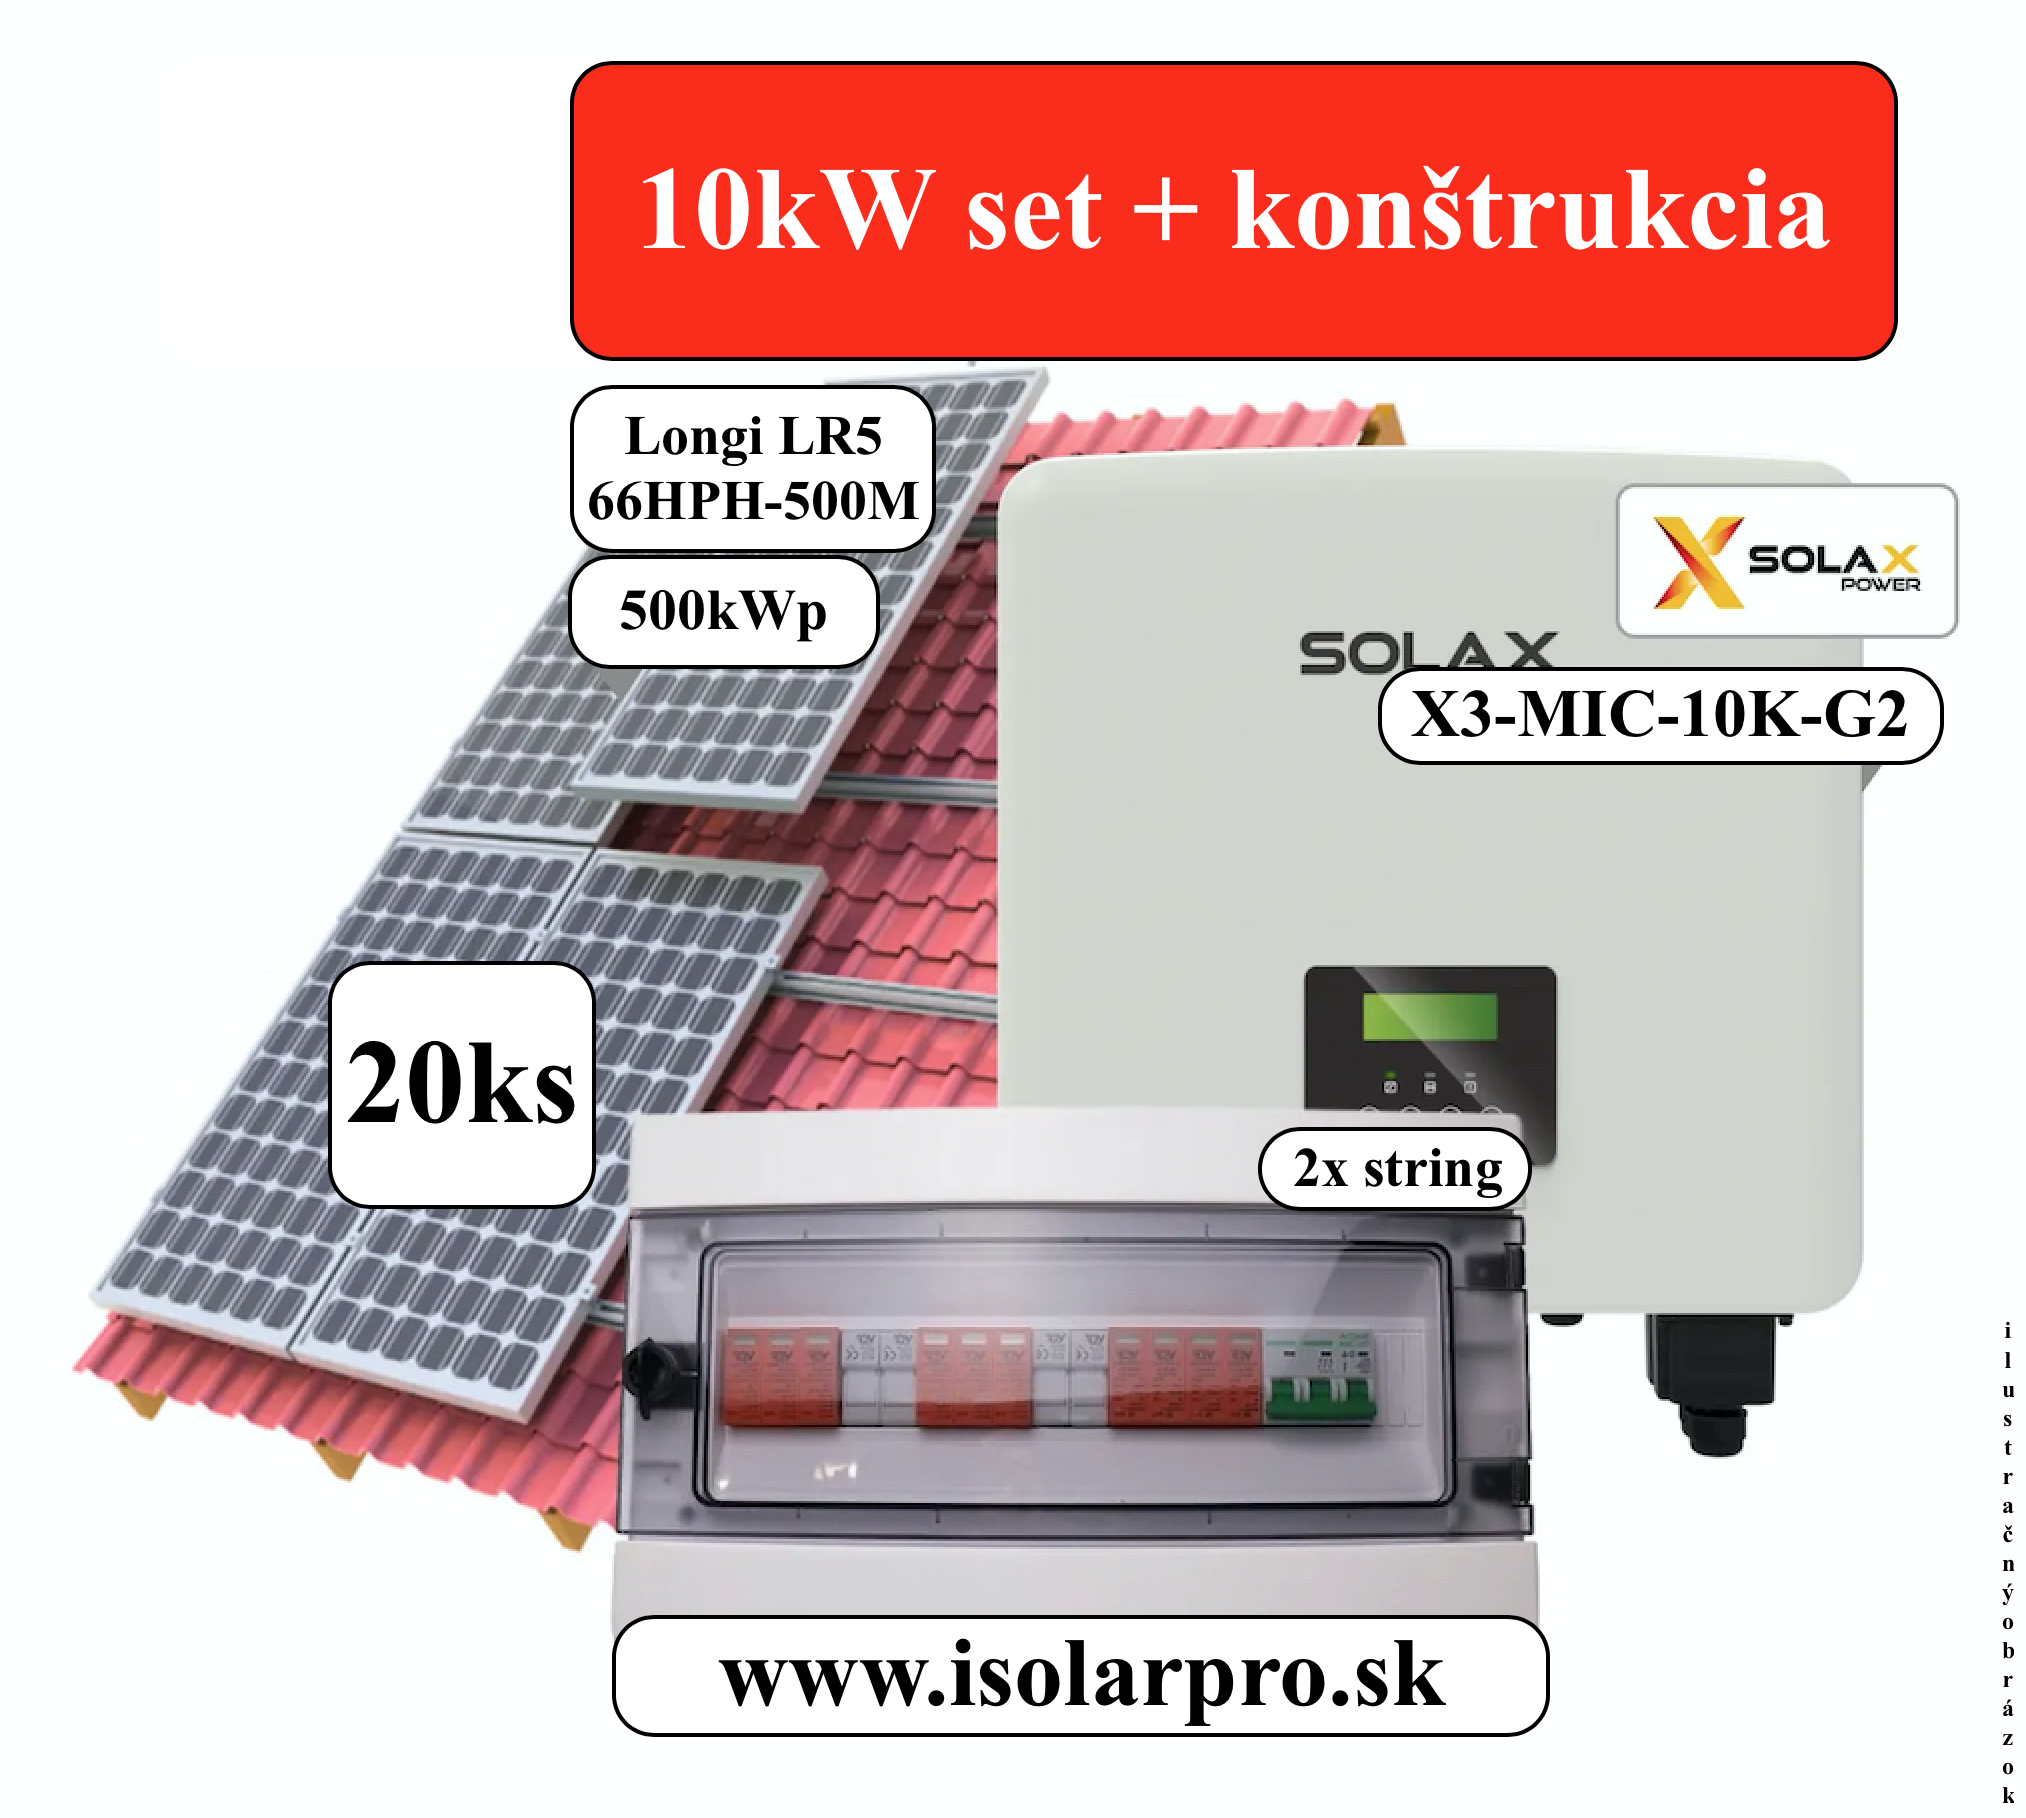 10kWp Trojfázový fotovoltický set, On-grid SolaX + konštrukcia